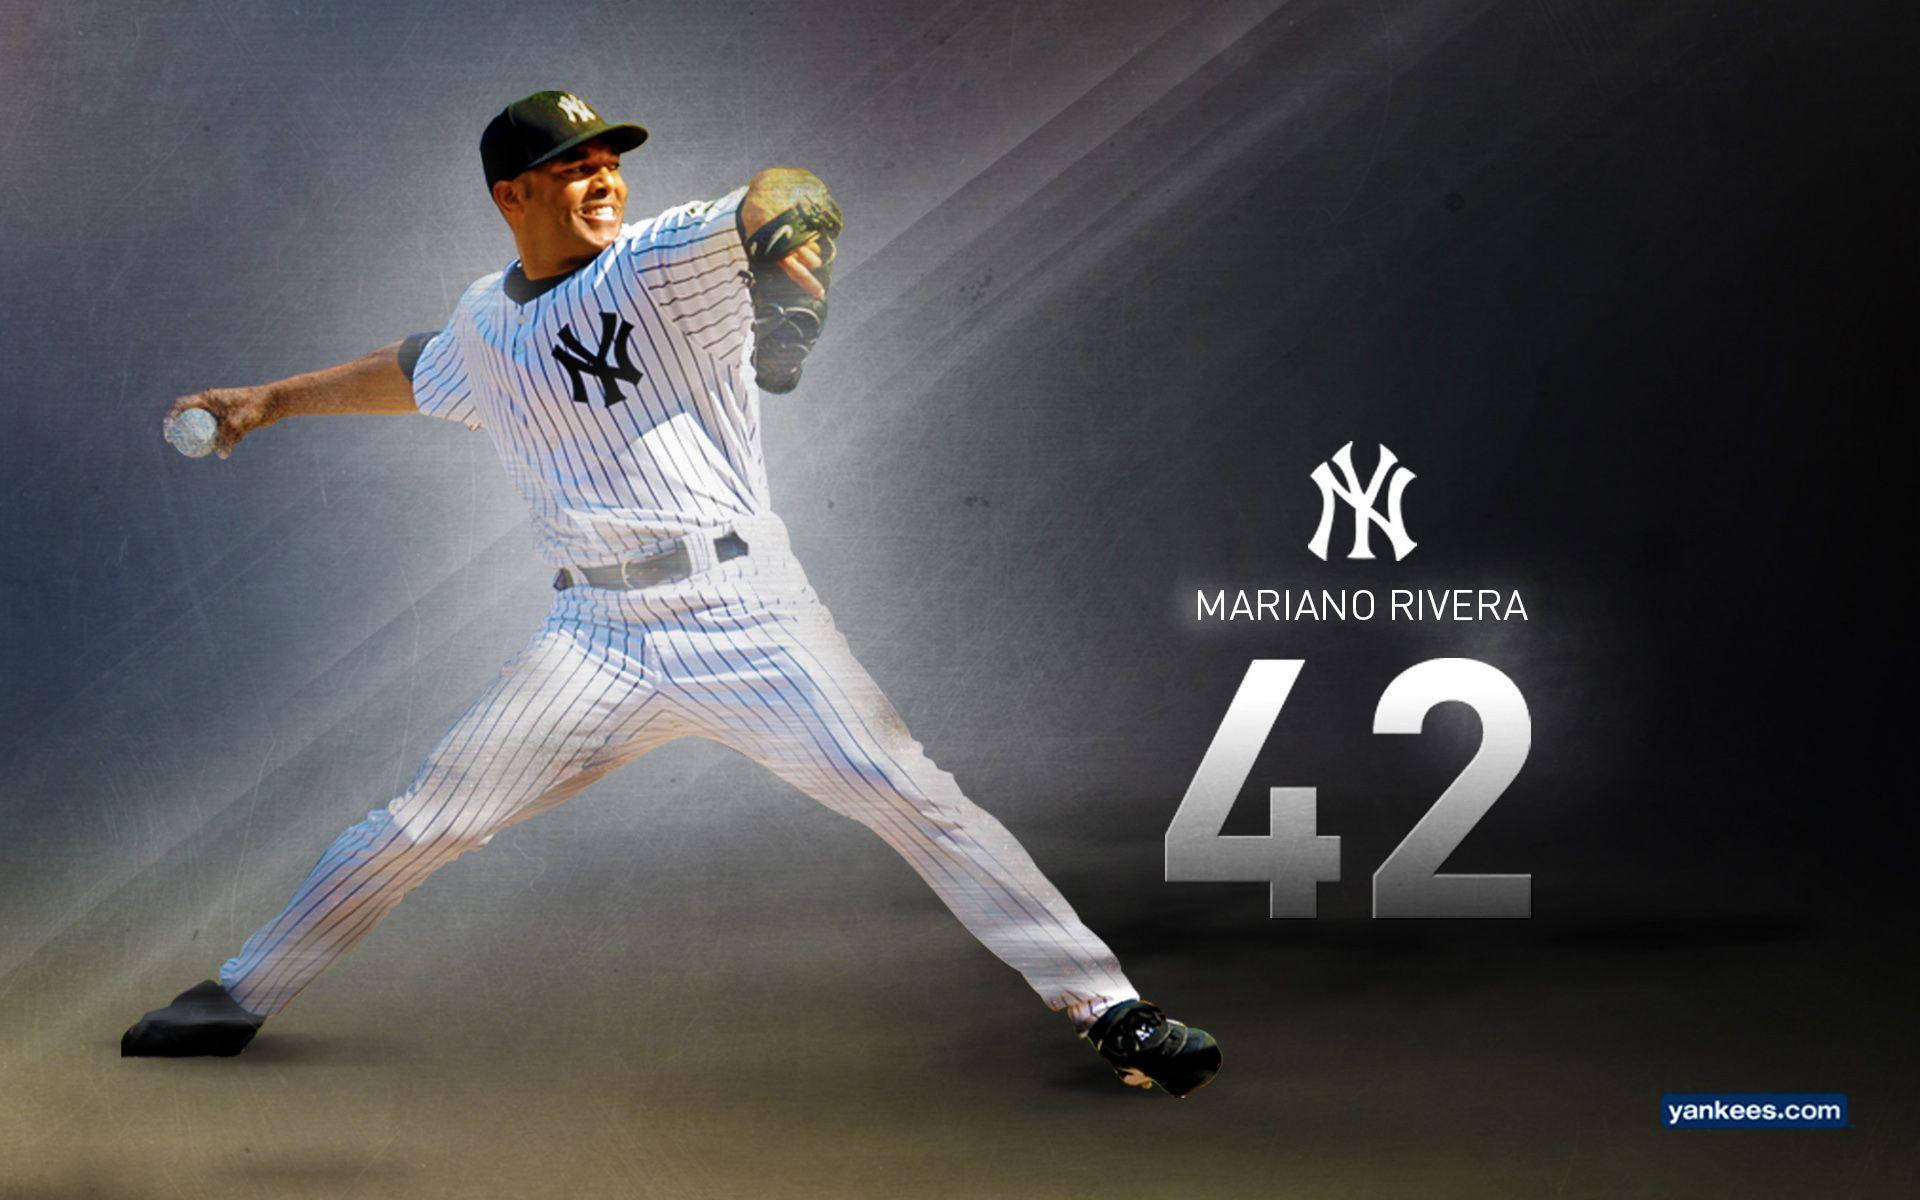 Yankees Mariano Rivera 42 Wallpaper